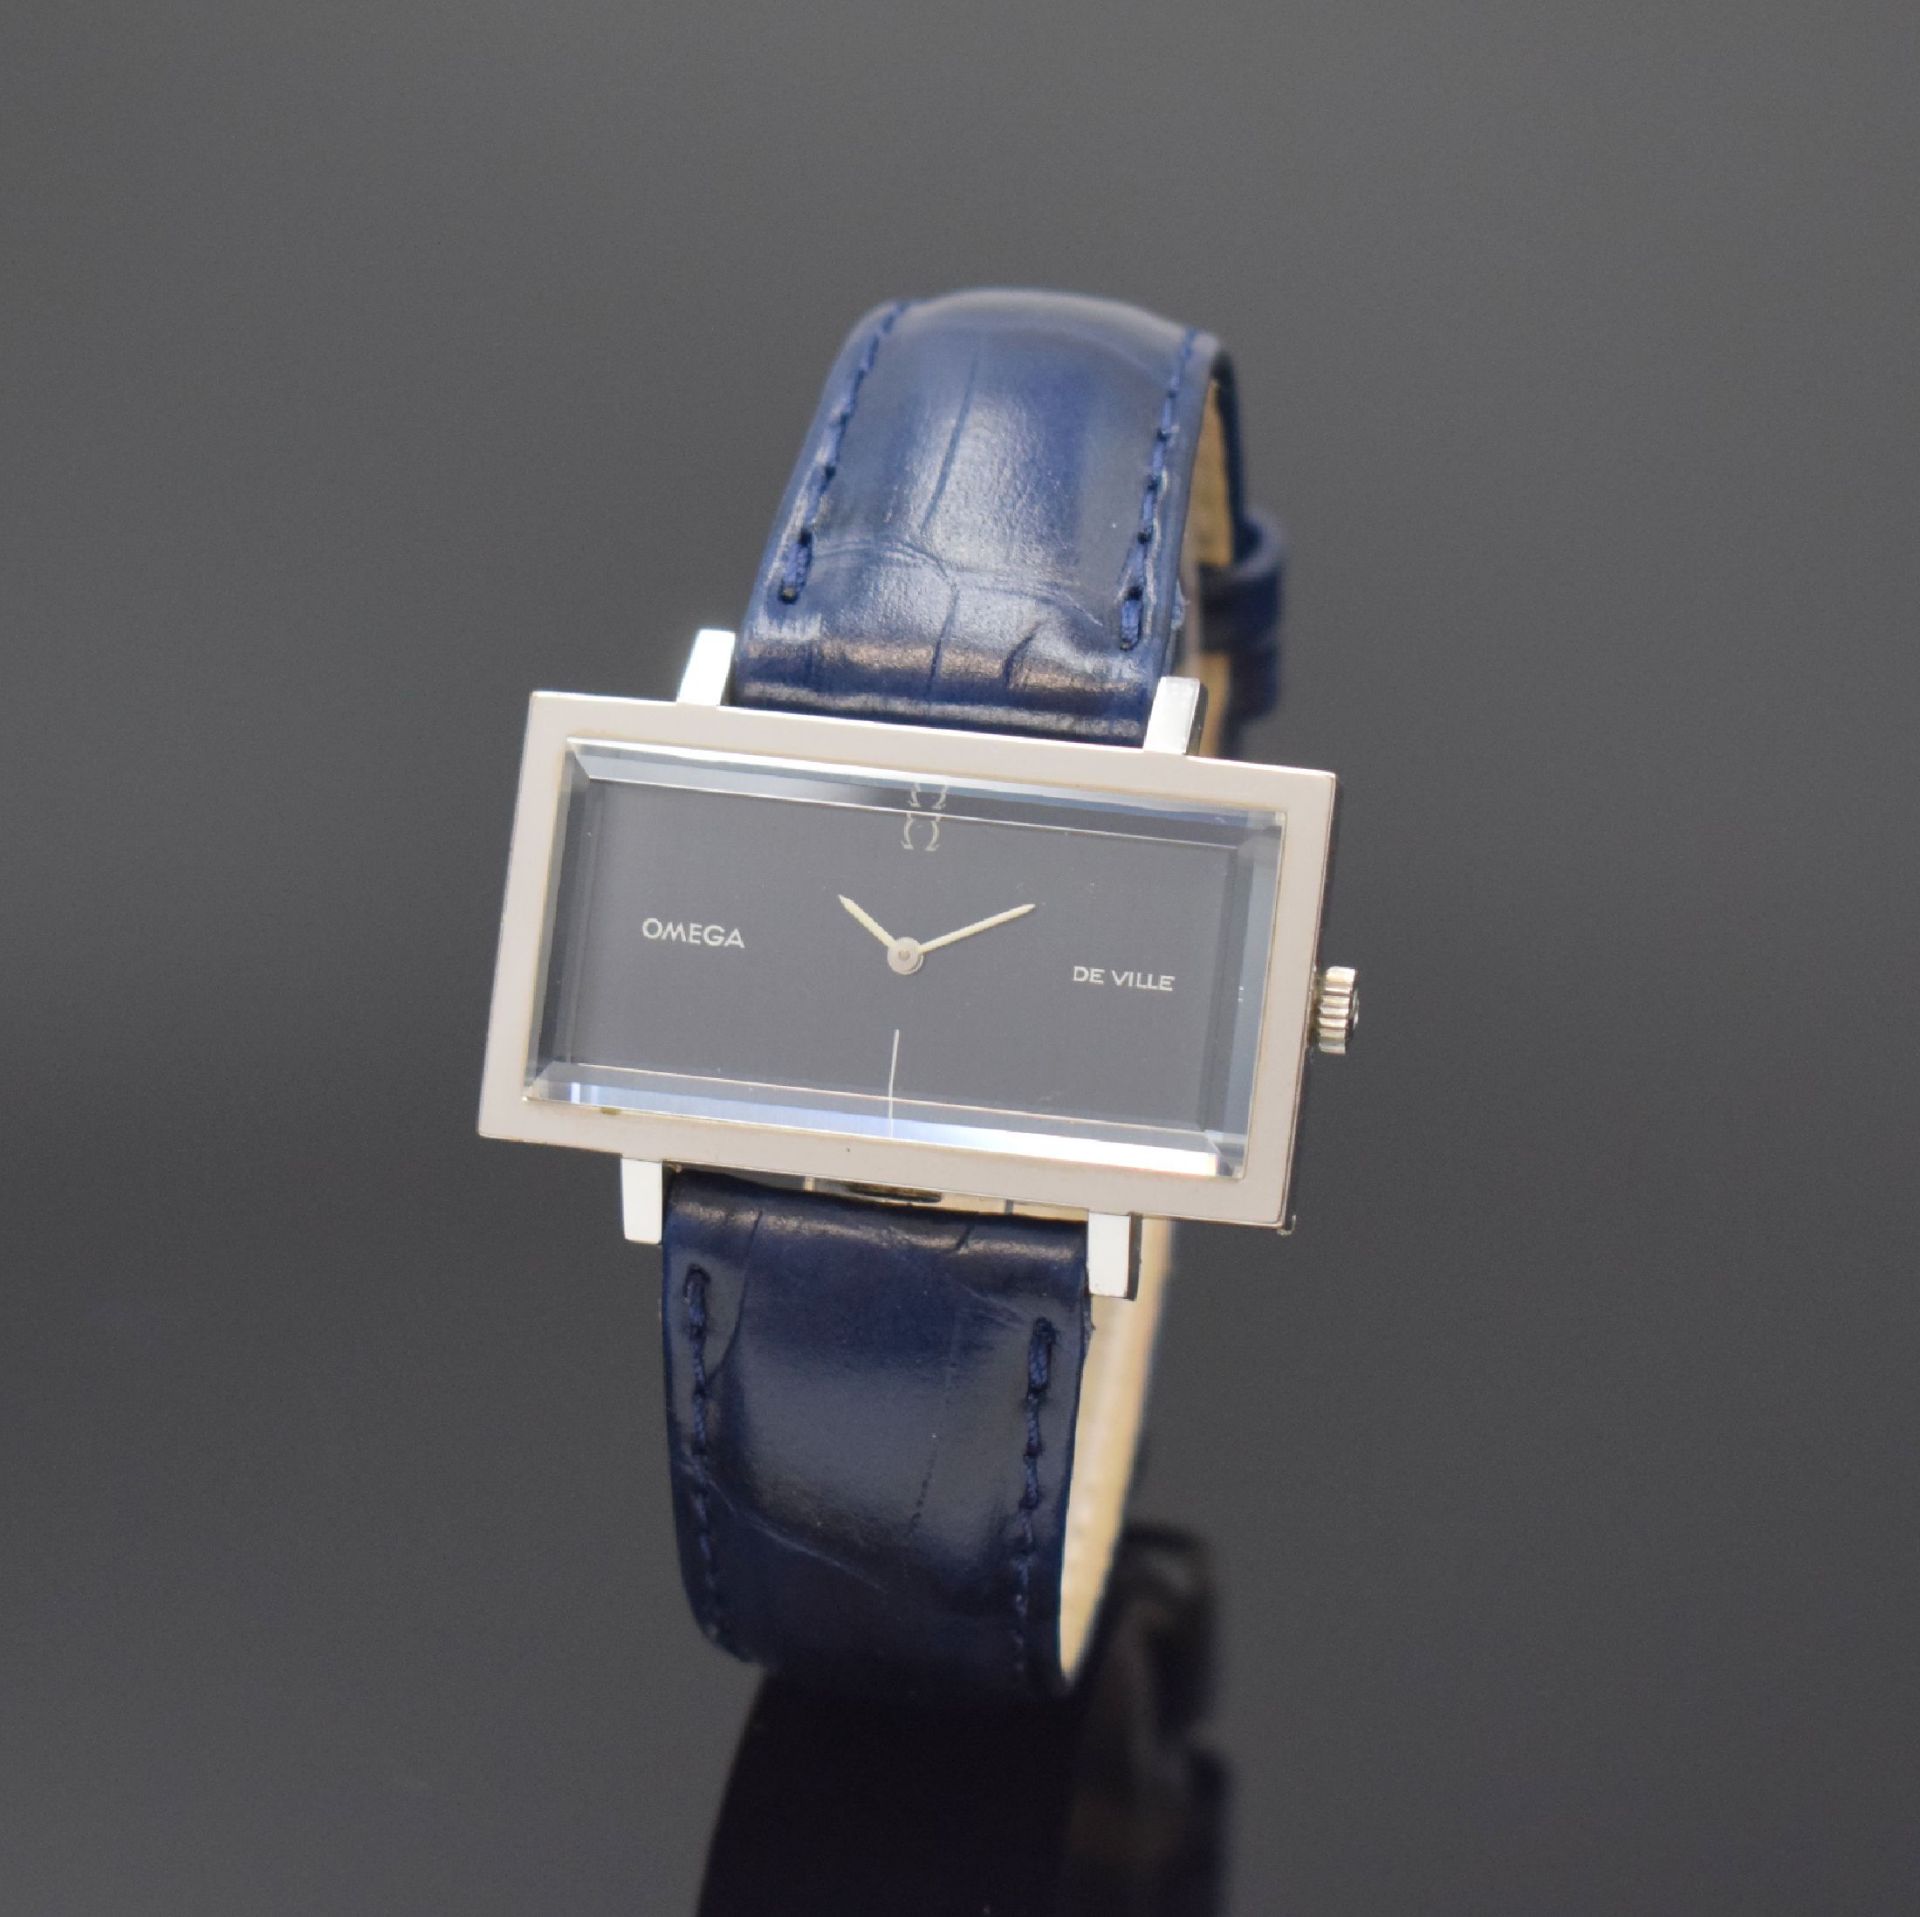 OMEGA De Ville rechteckige Armbanduhr, Schweiz um 1973,